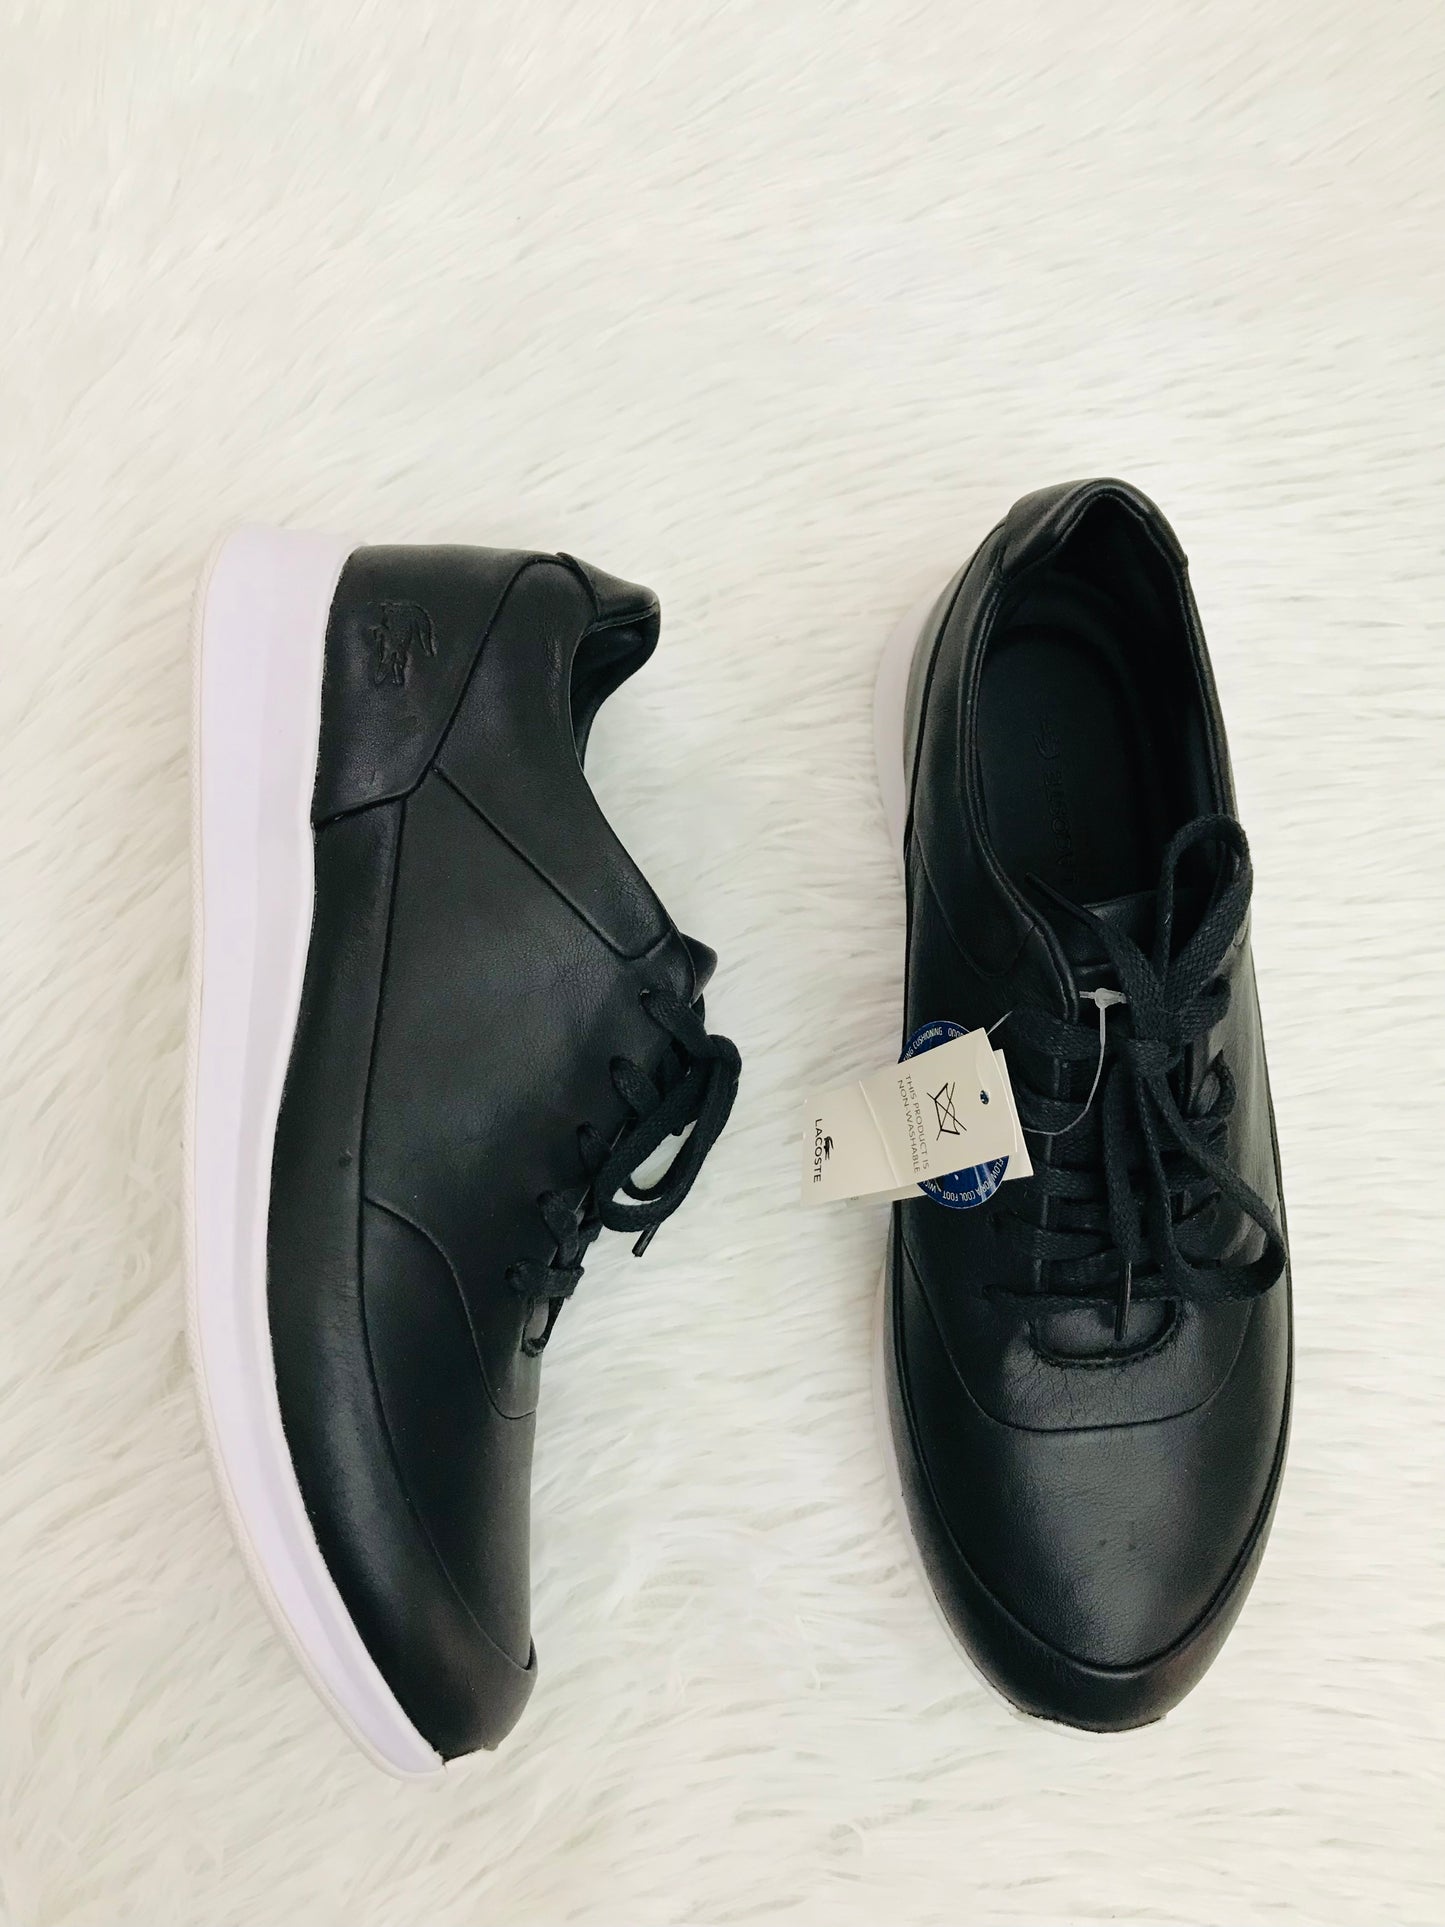 Zapato Lacoste original, color negro con parte de abajo blanca, logotipo pequeño de la marca en un lado en color negro poco visible.